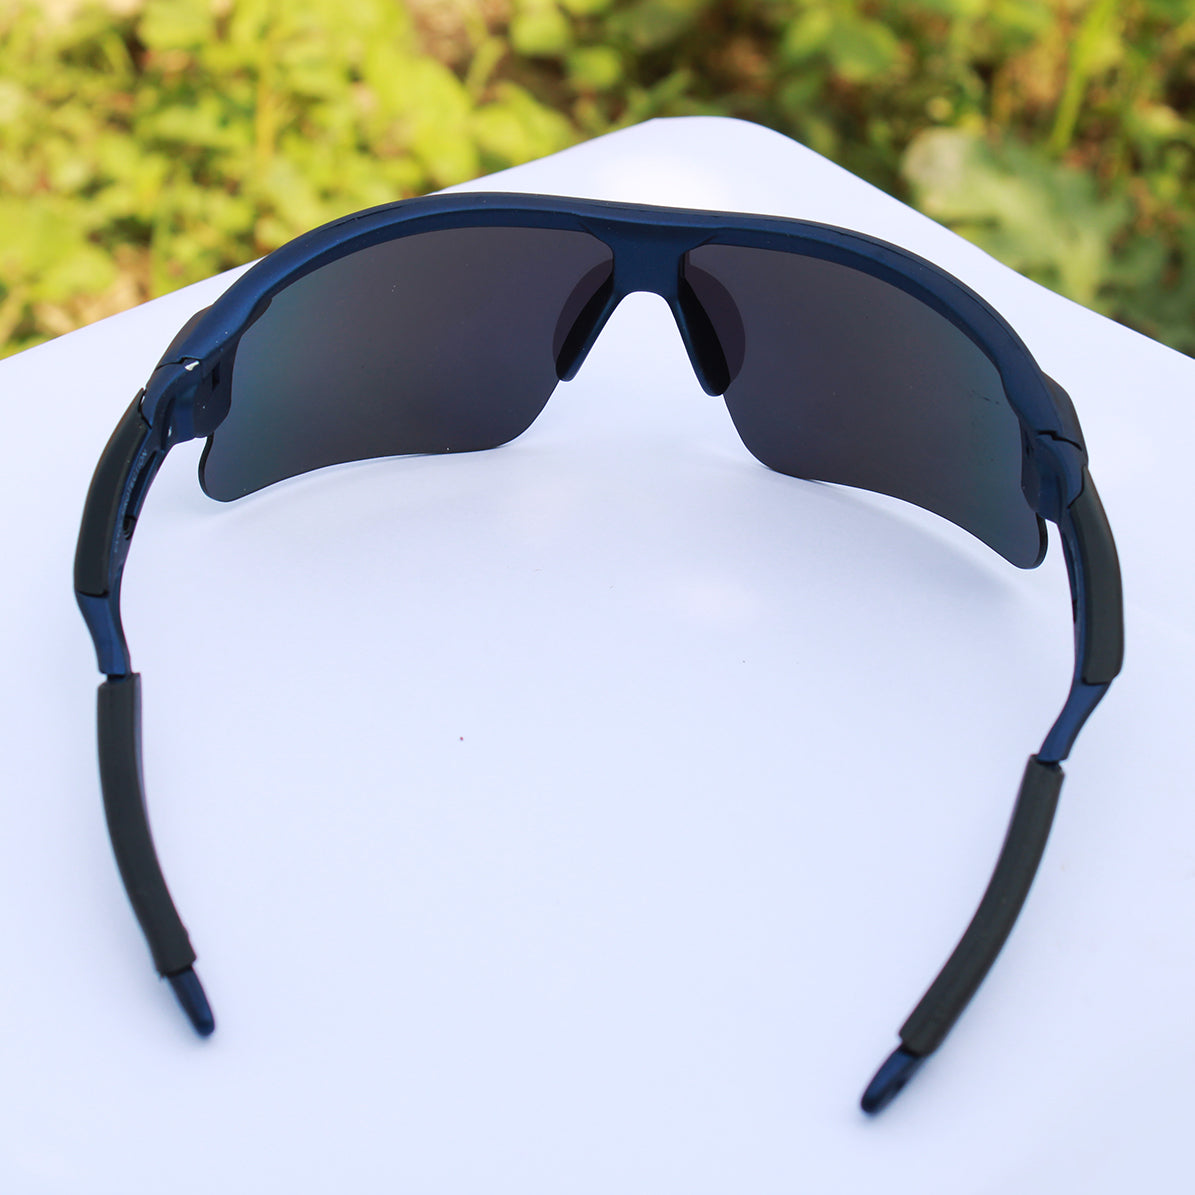 Jiebo New Stylish Cycling Polarized Sport Sunglasses